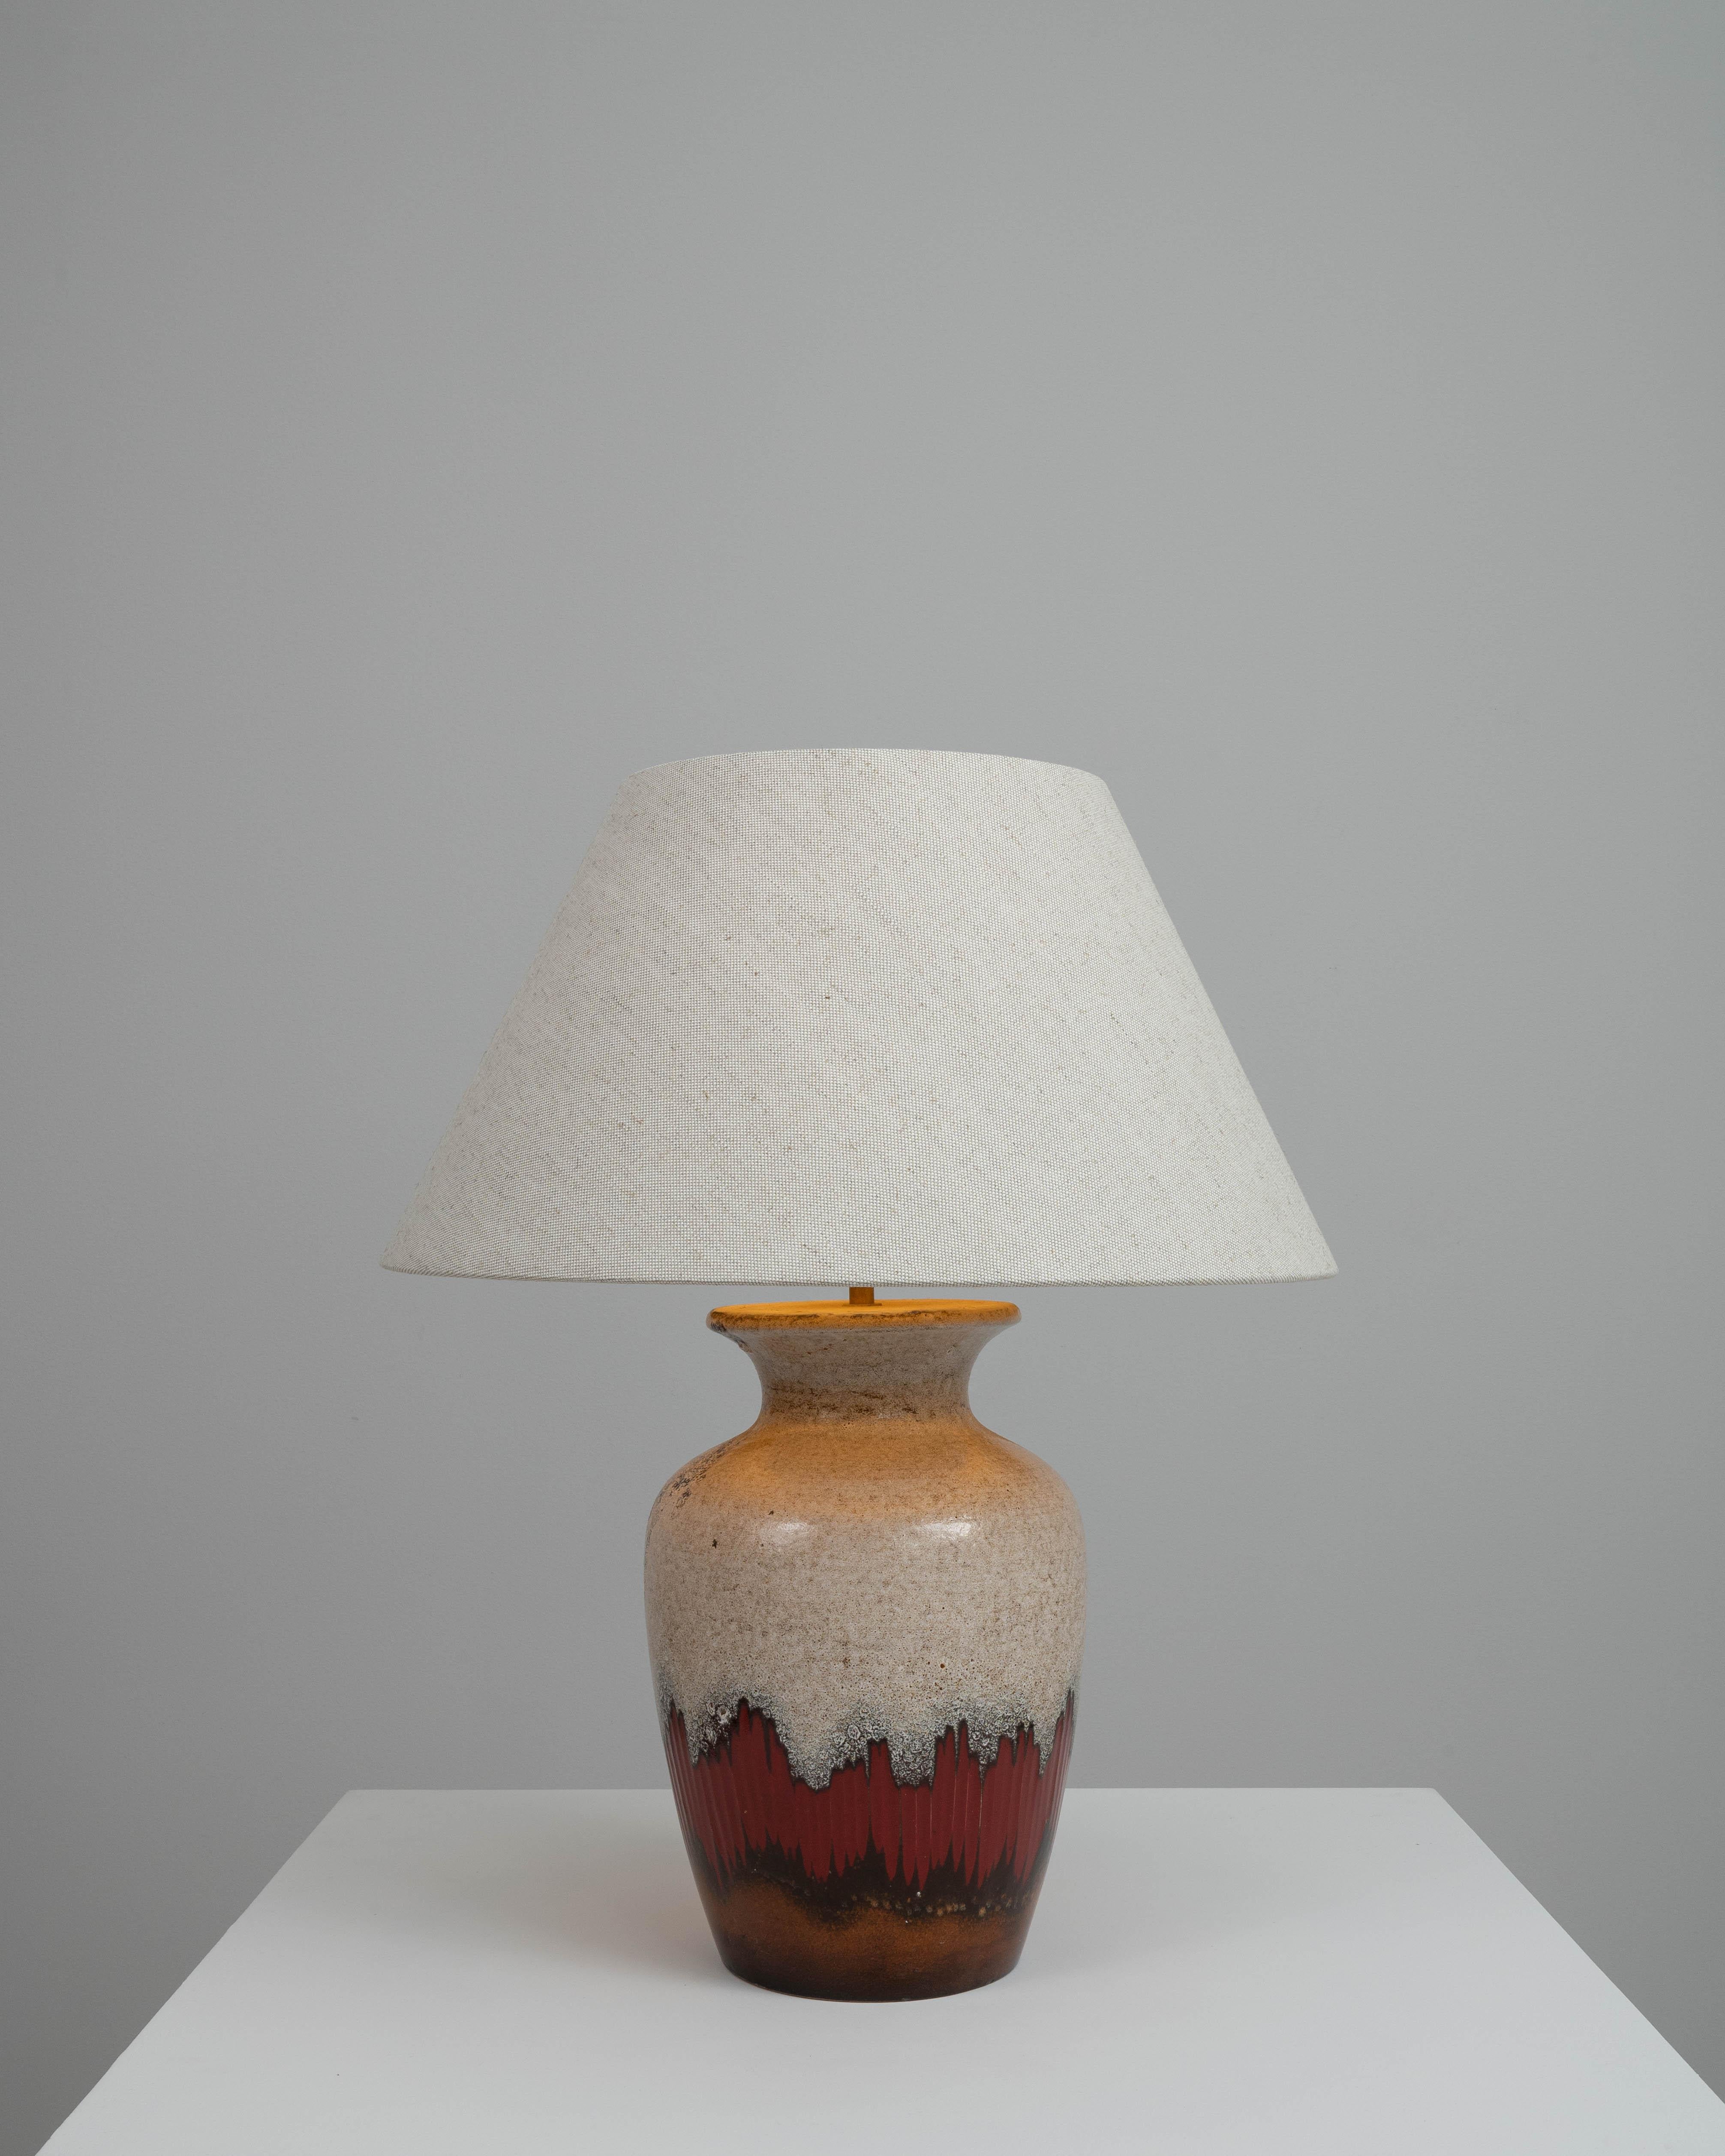 Cette lampe de table en céramique allemande du XXe siècle est une splendide fusion de l'art et de la fonction. Cette pièce promet d'être bien plus qu'une simple source de lumière dans votre espace de vie. La forme robuste de la lampe est ornée d'une